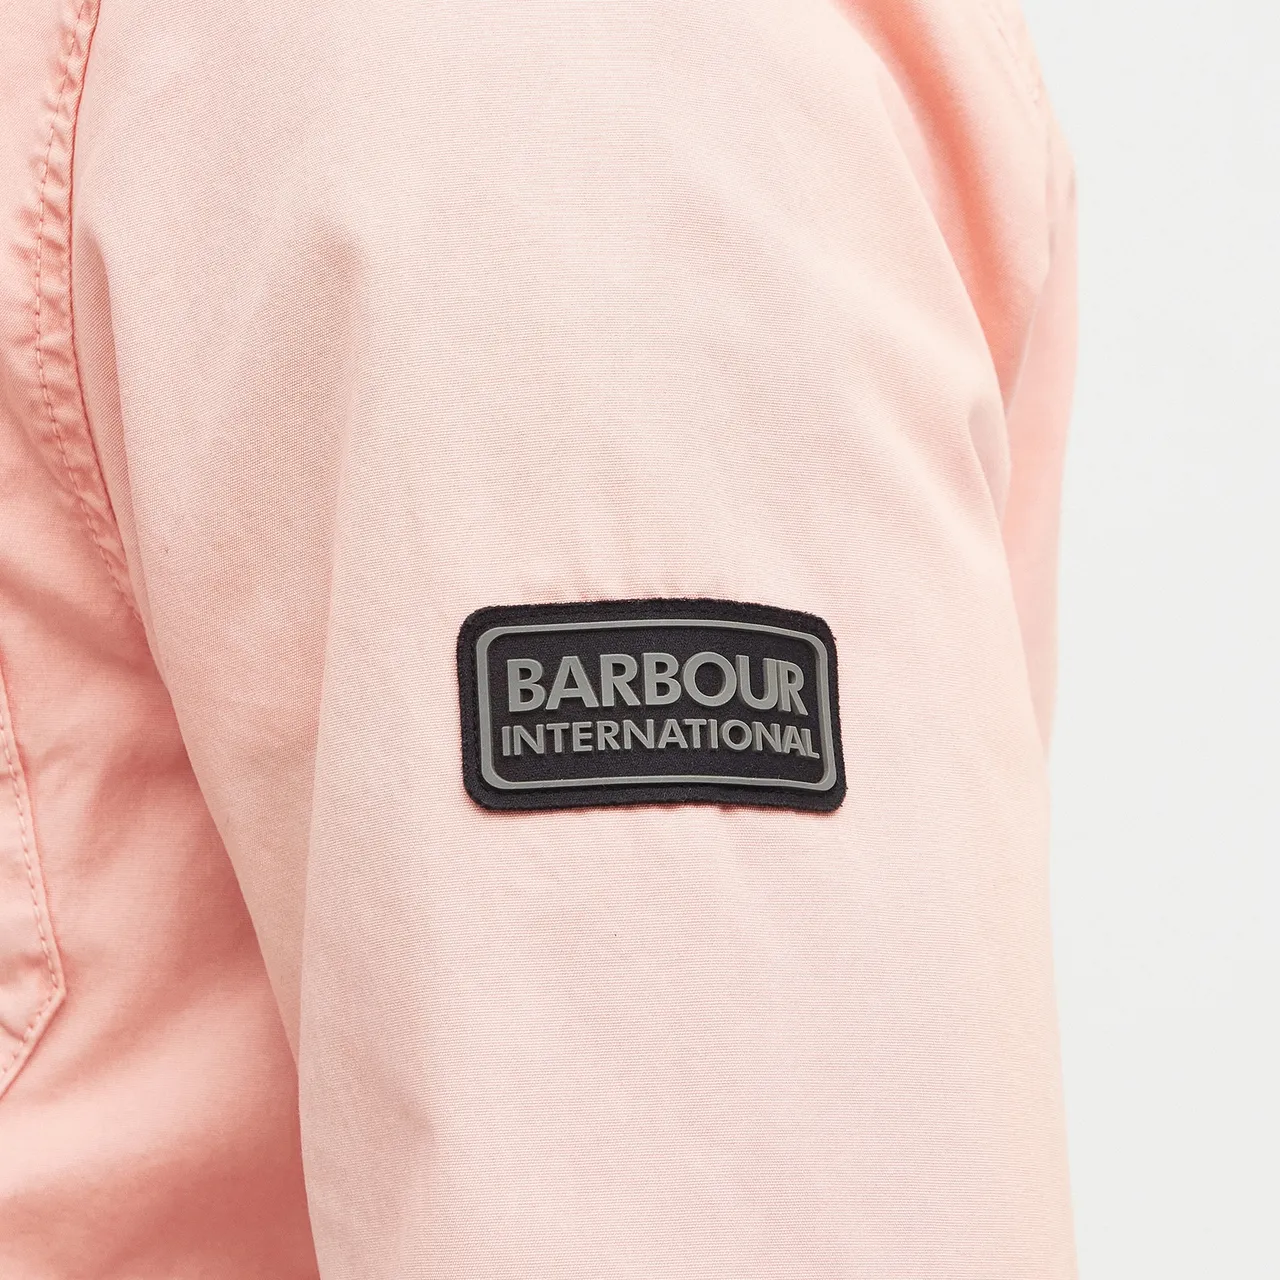 Barbour International Gear Cotton Overshirt